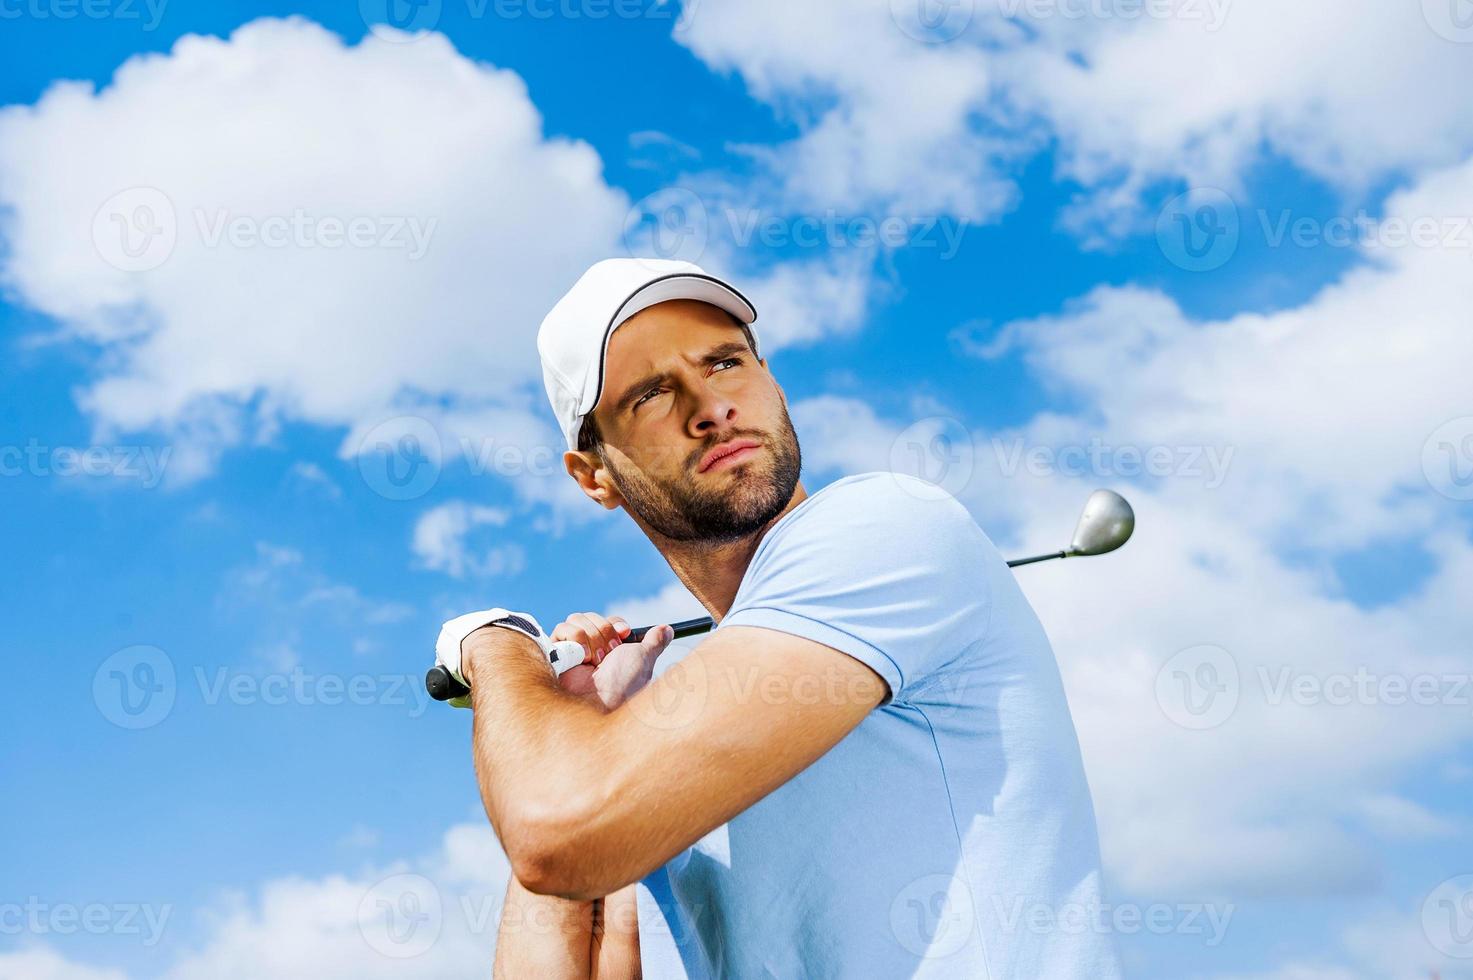 balanço profissional. vista de ângulo baixo do jogador de golfe jovem e confiante balançando seu motorista e desviar o olhar com o céu azul como pano de fundo foto